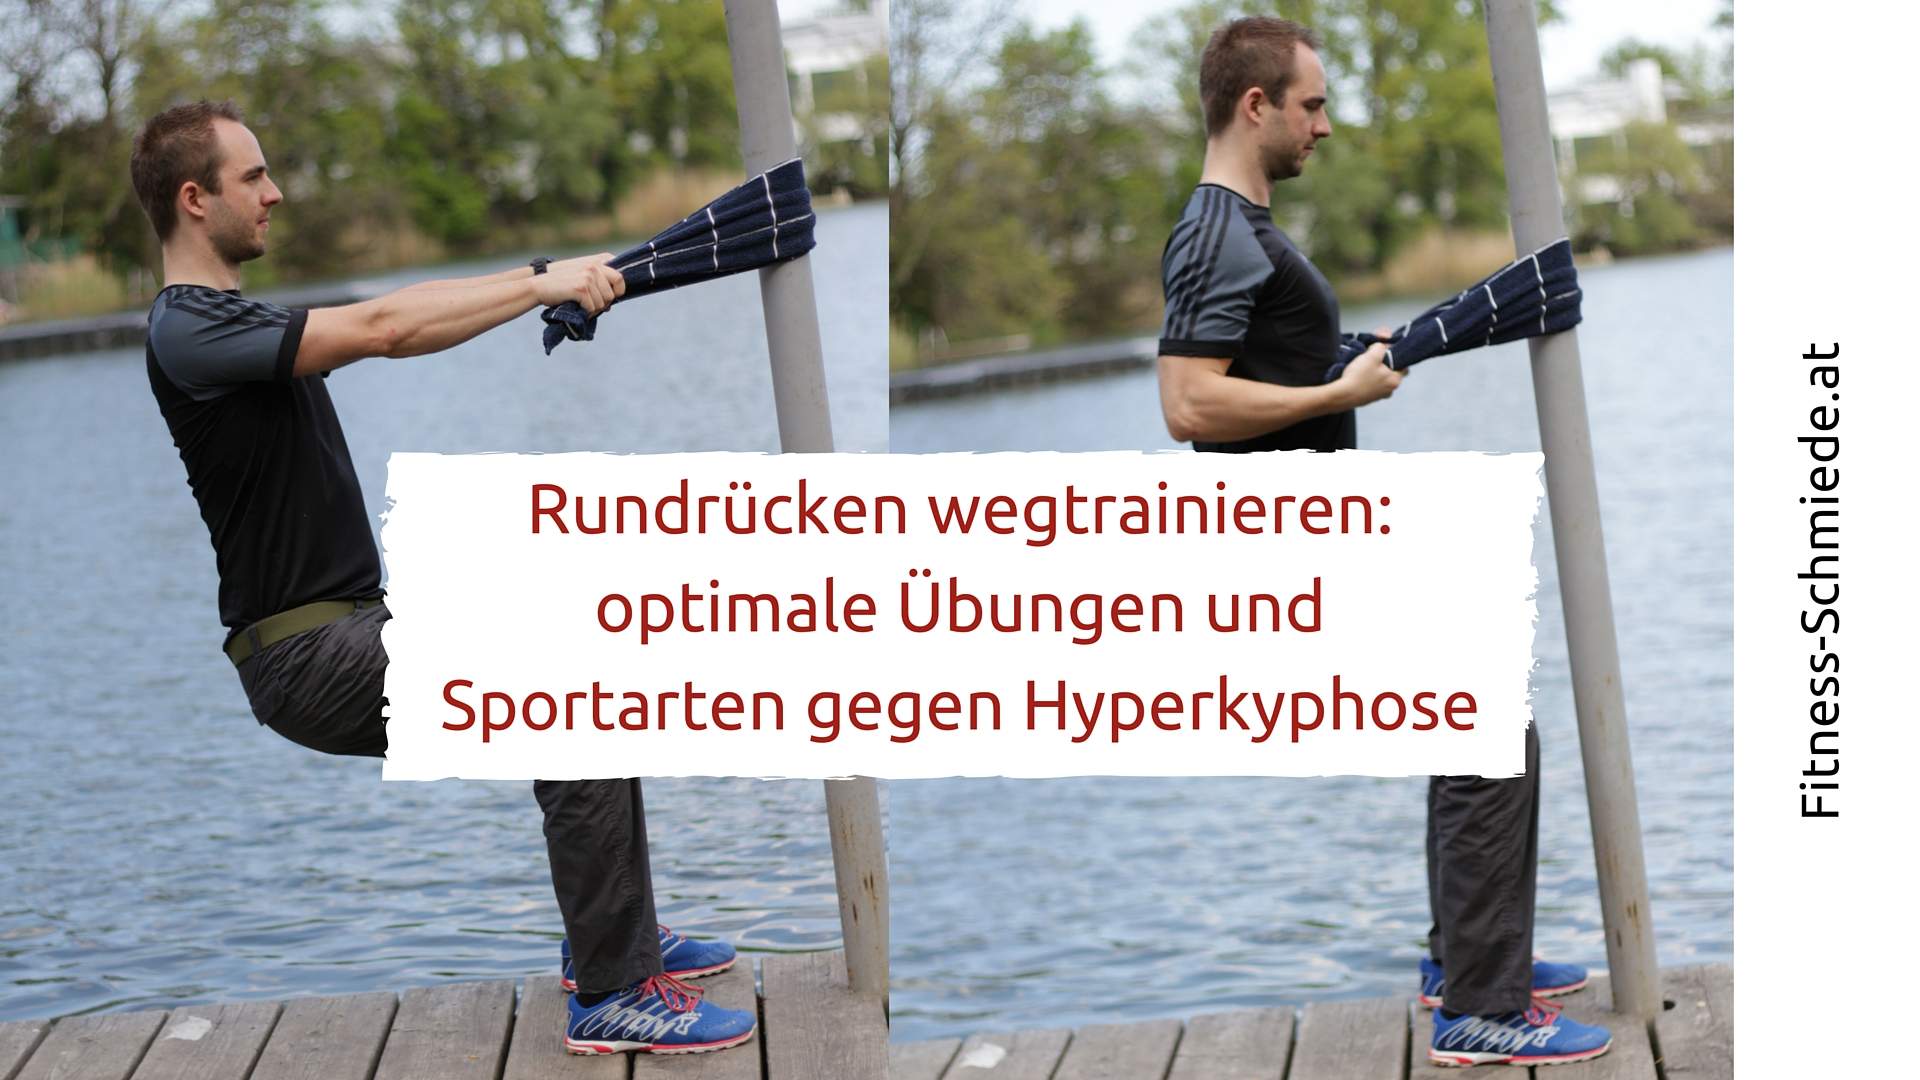 Rundrücken wegtrainieren - optimale Übungen und Sportarten gegen Hyperkyphose - Fitness-Schmiede.at